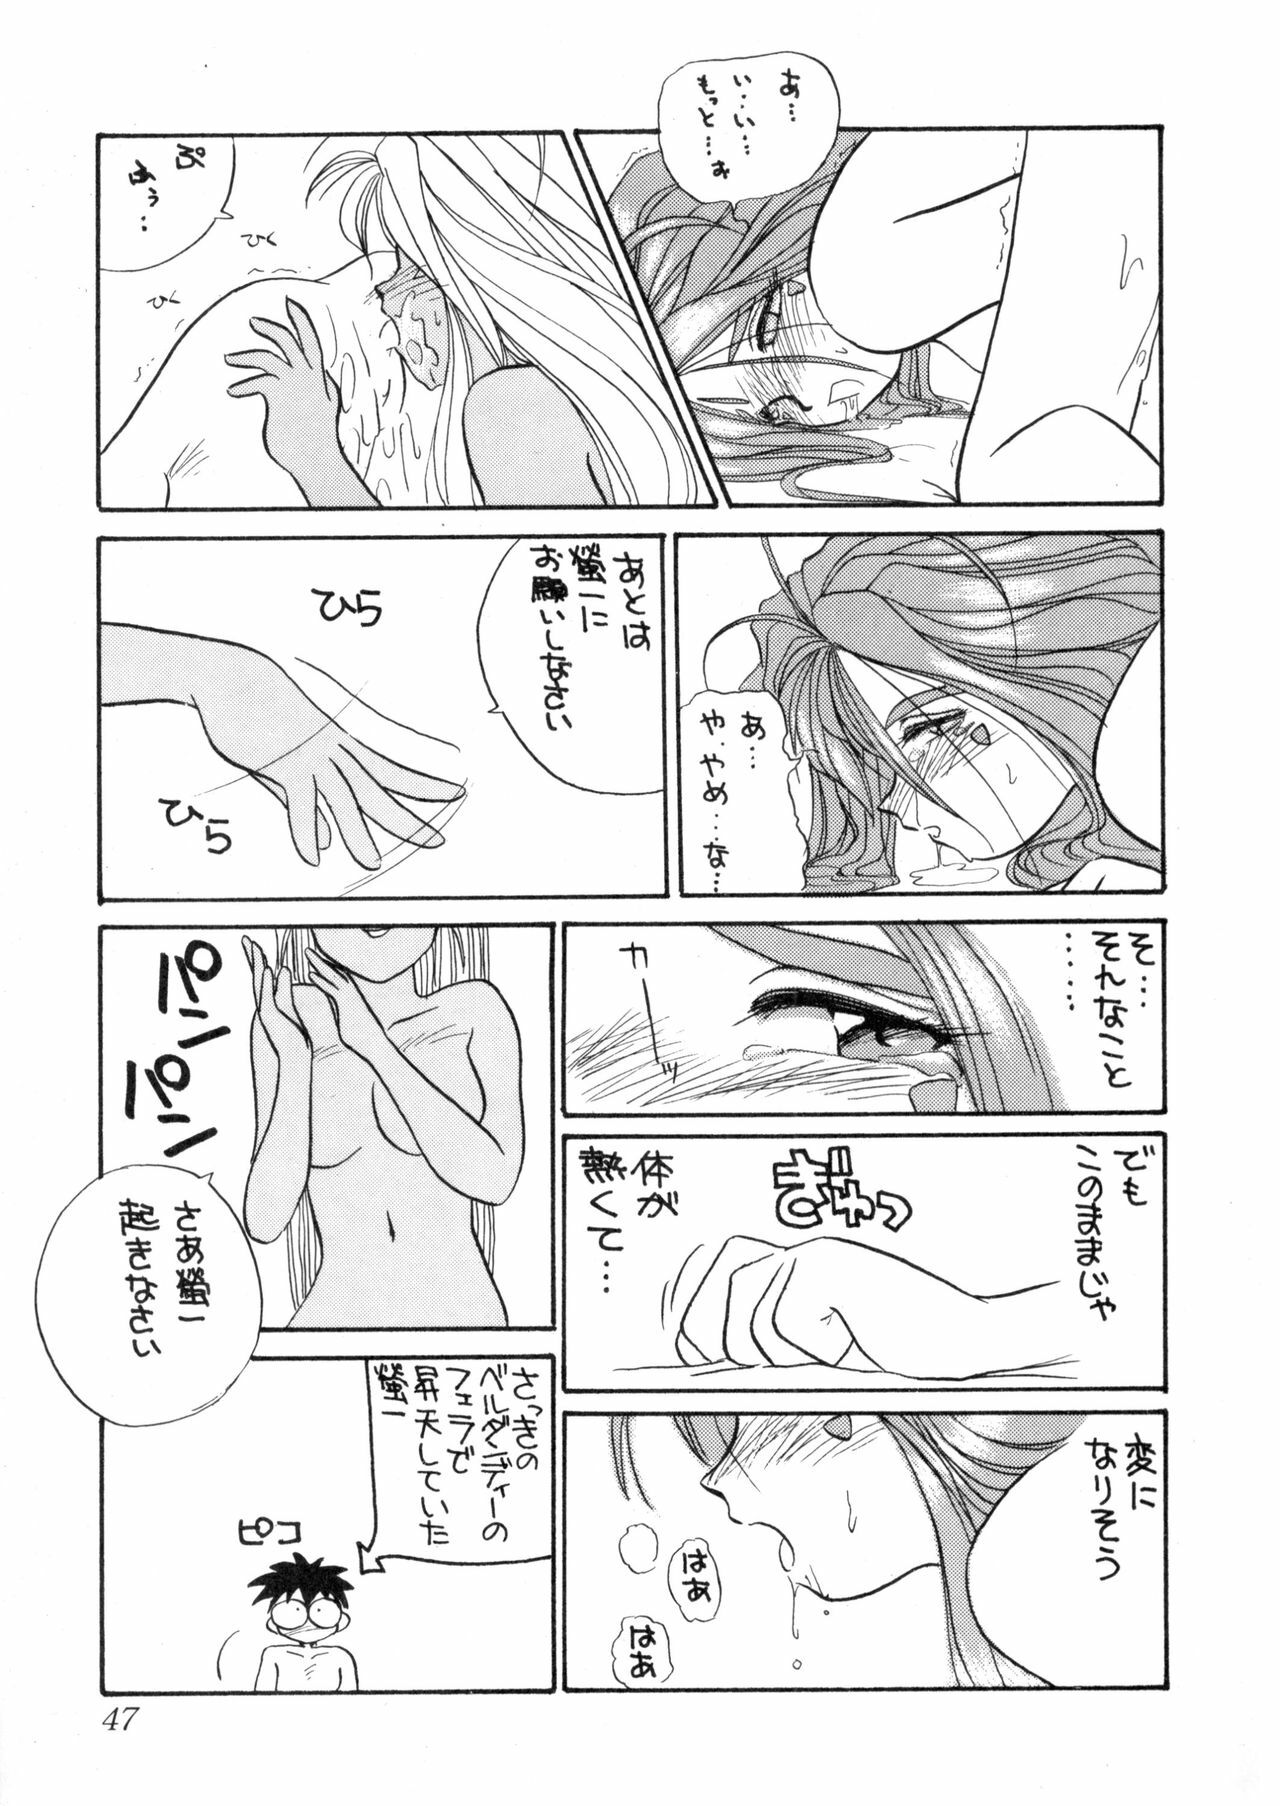 (C44) [Tenchuugumi (Tenbatsu Otoko, Tenchuunan)] IF 5 (Oh my goddess!) page 46 full